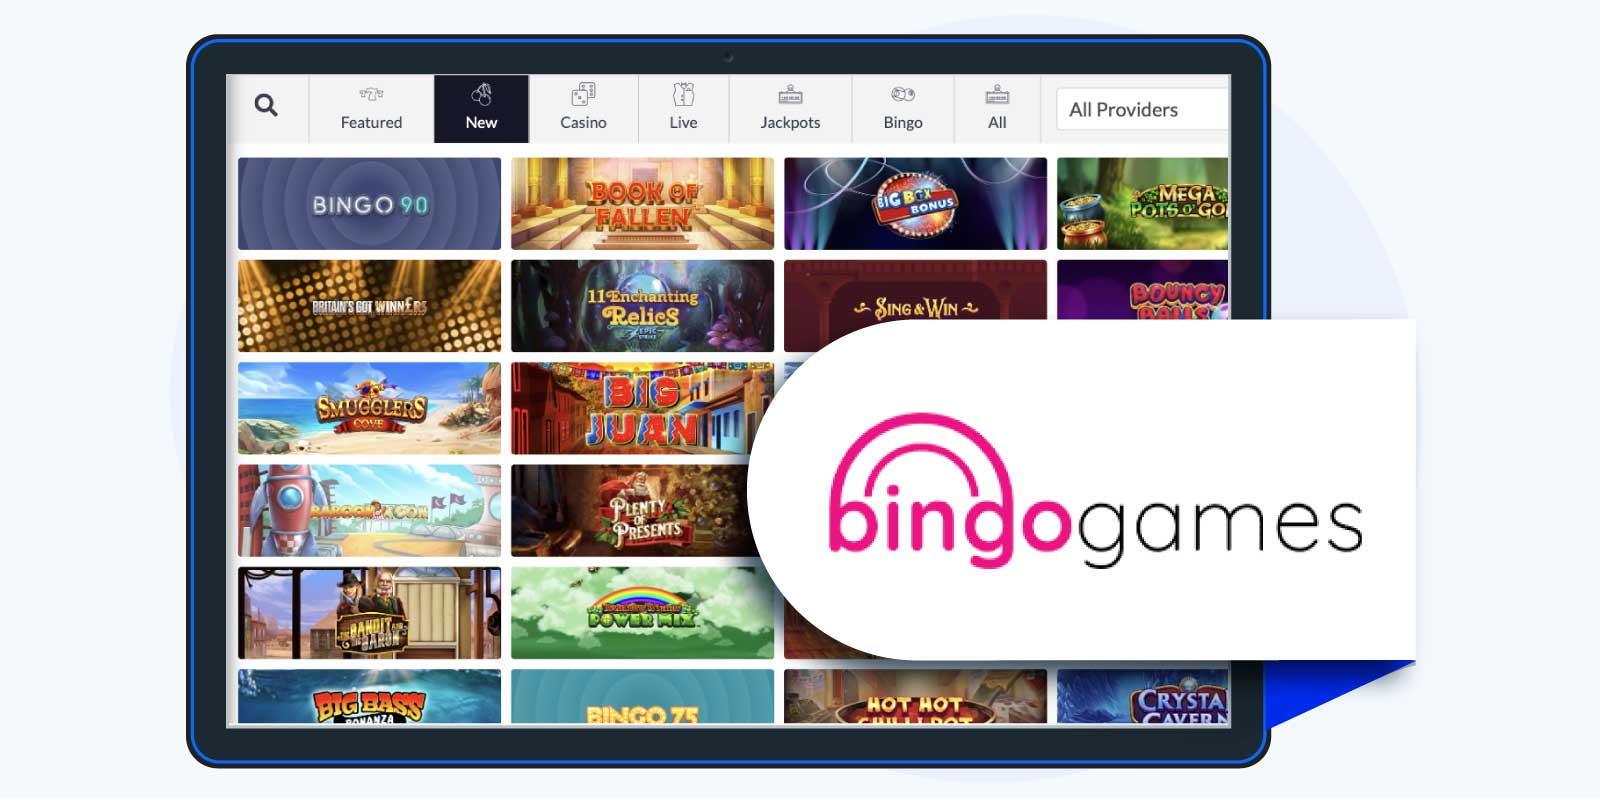 Bingo Games – 10 free spins no deposit